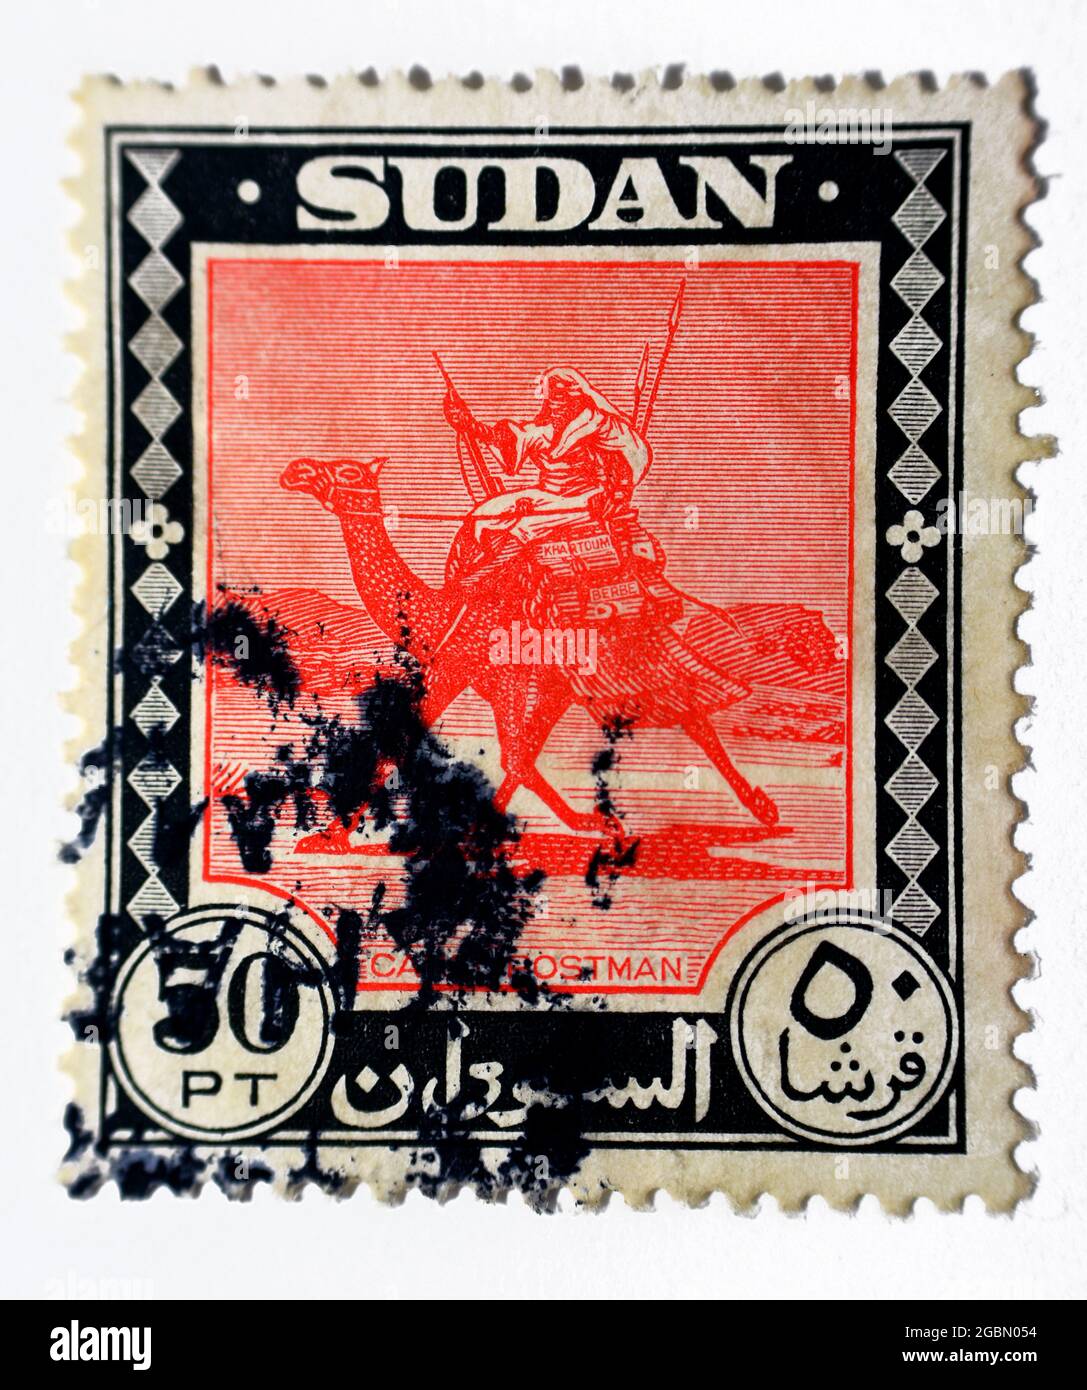 Eine Briefmarke aus der Sudan Camel Postman Serie, Value 50pt Fifty piasters, um 1951, Ein Kamel in der Wüste mit einem Postboten in sudanesischer Traditiono Stockfoto